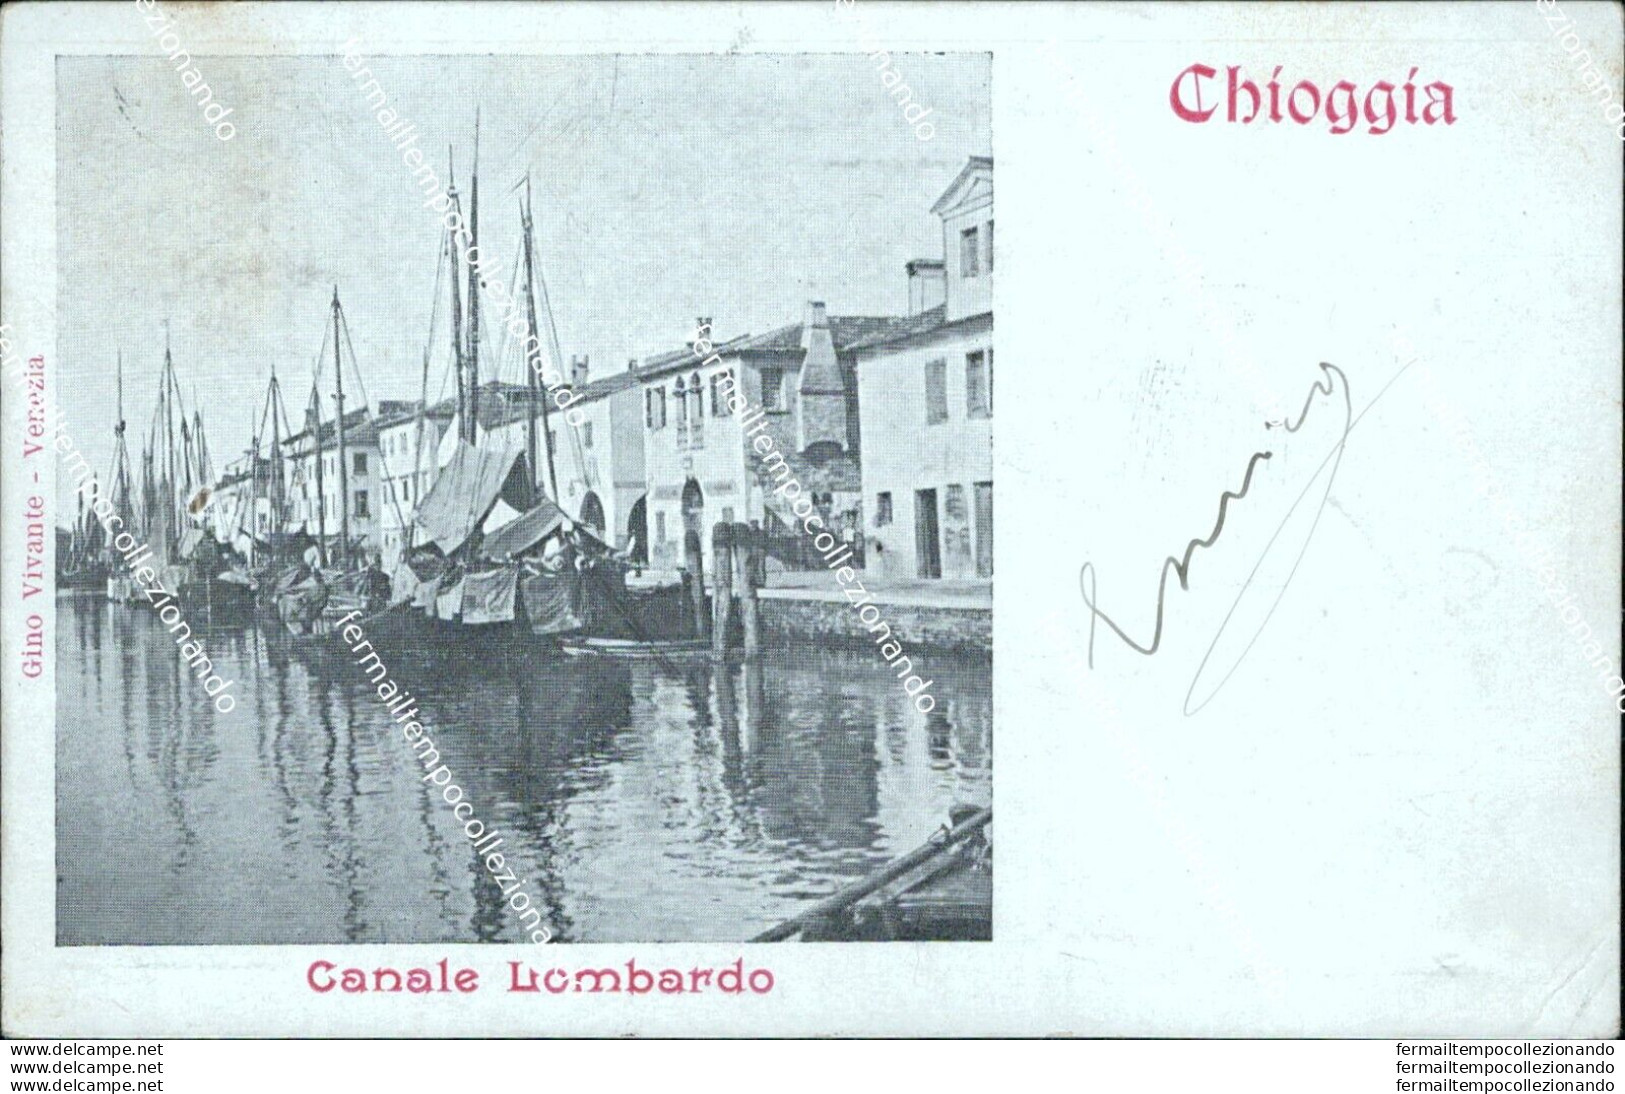 As604 Cartolina Chioggia Canale Lombardo Venezia - Venezia (Venedig)